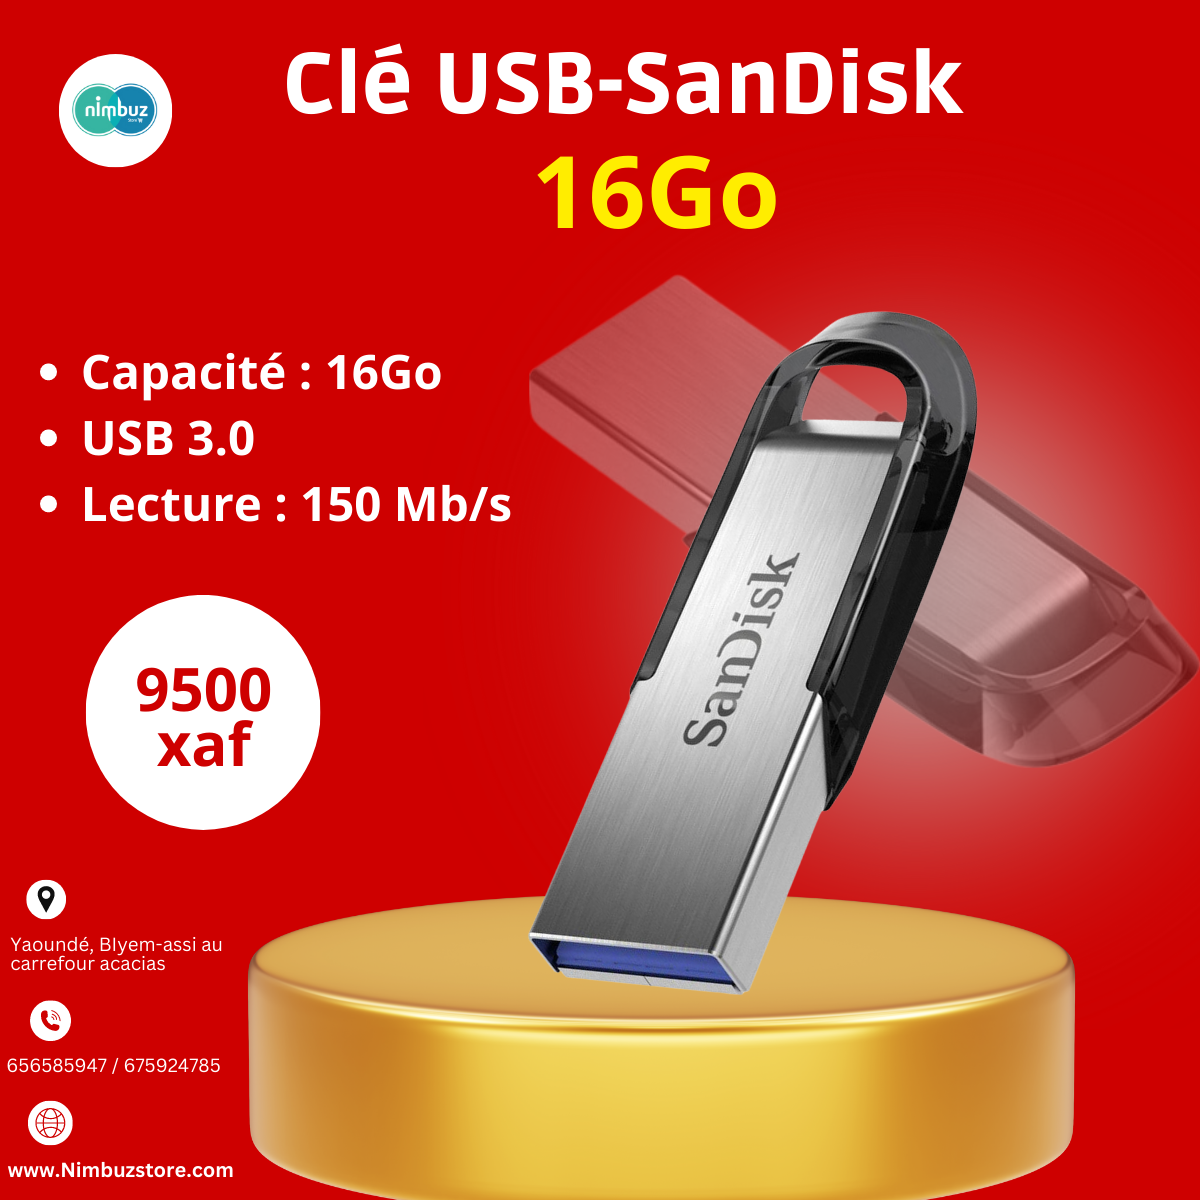 Clé USB 2.0 Cruzer Blade 64 Go SANDISK à Prix Carrefour